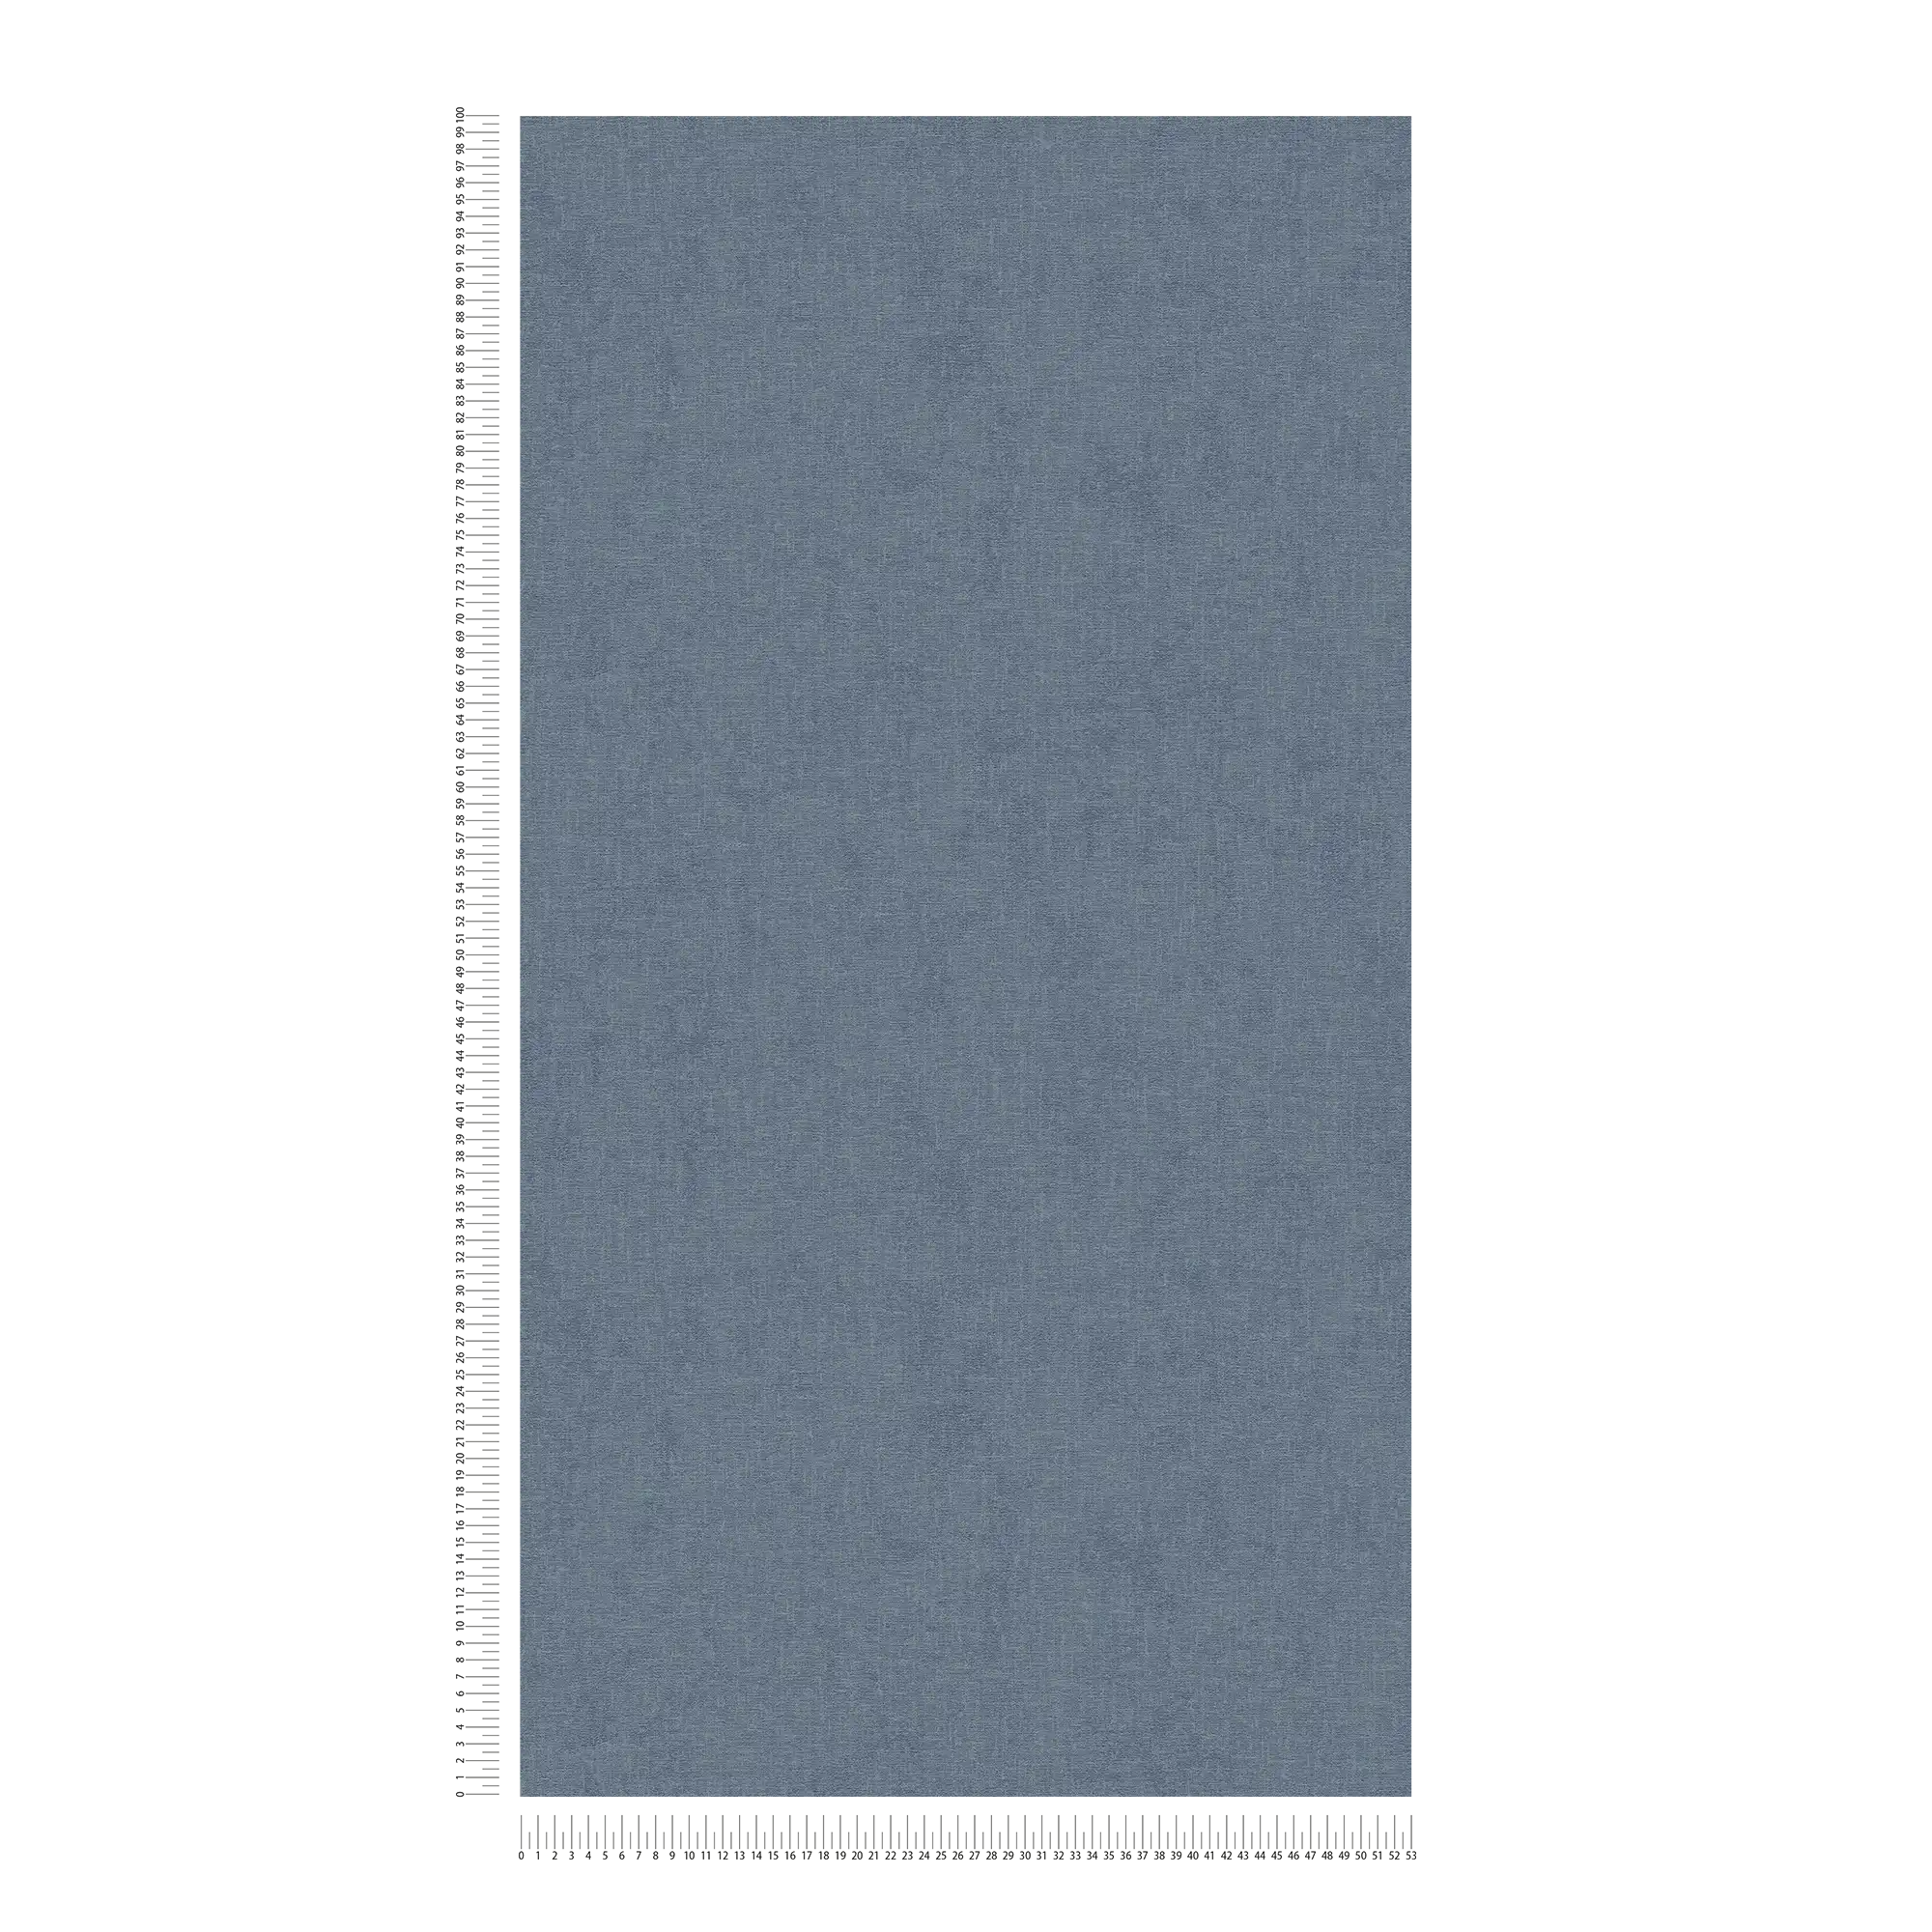             Papel pintado de unidad moteado con aspecto textil - azul
        